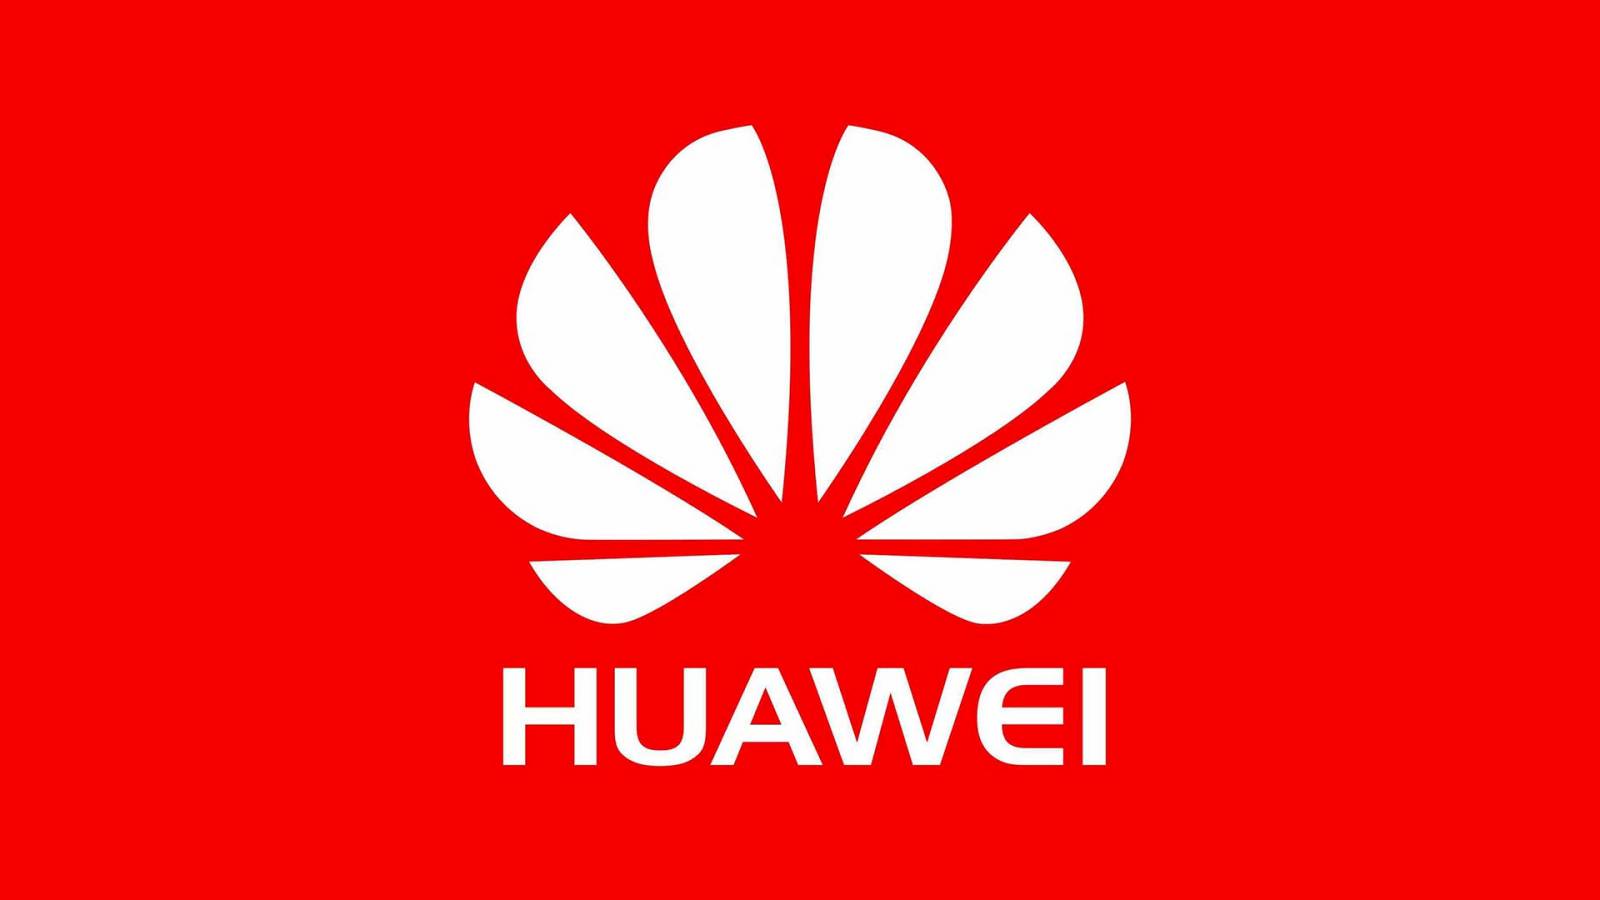 Huawei verspottet die USA wegen der als veraltet geltenden Technologien